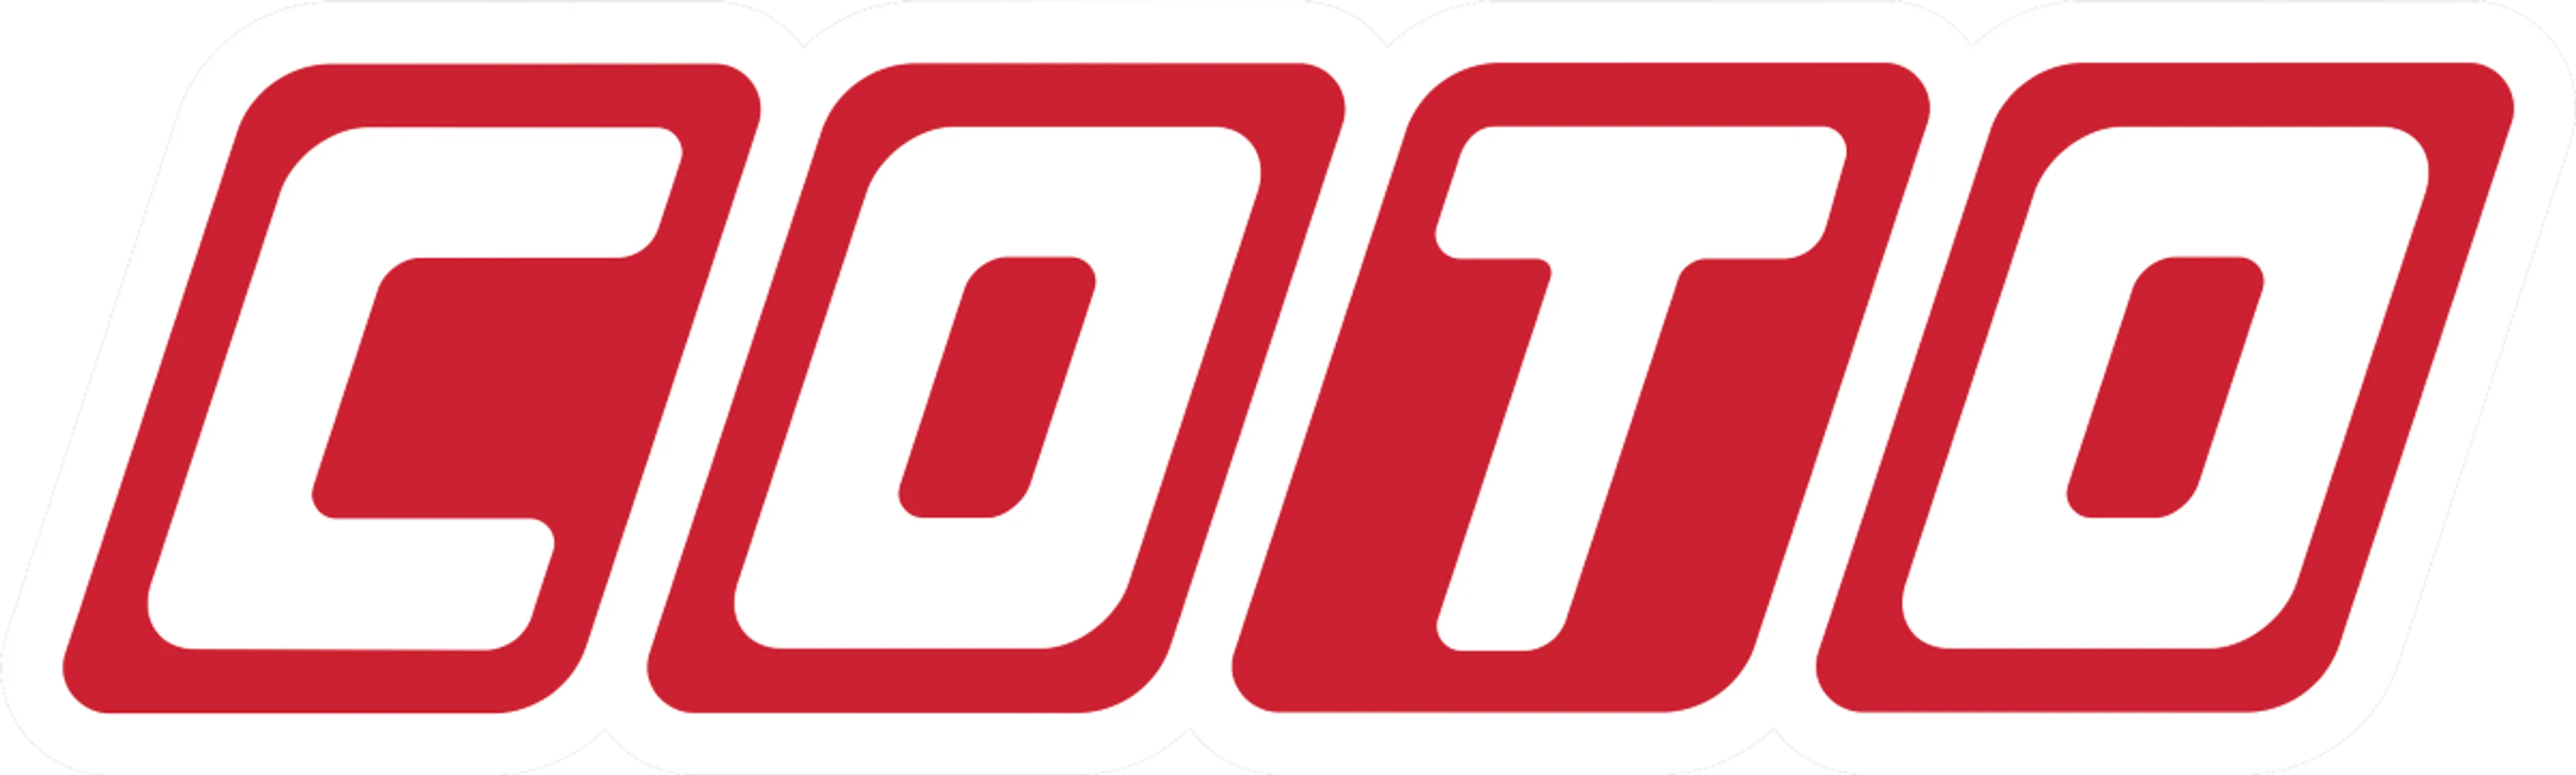 COTO logo